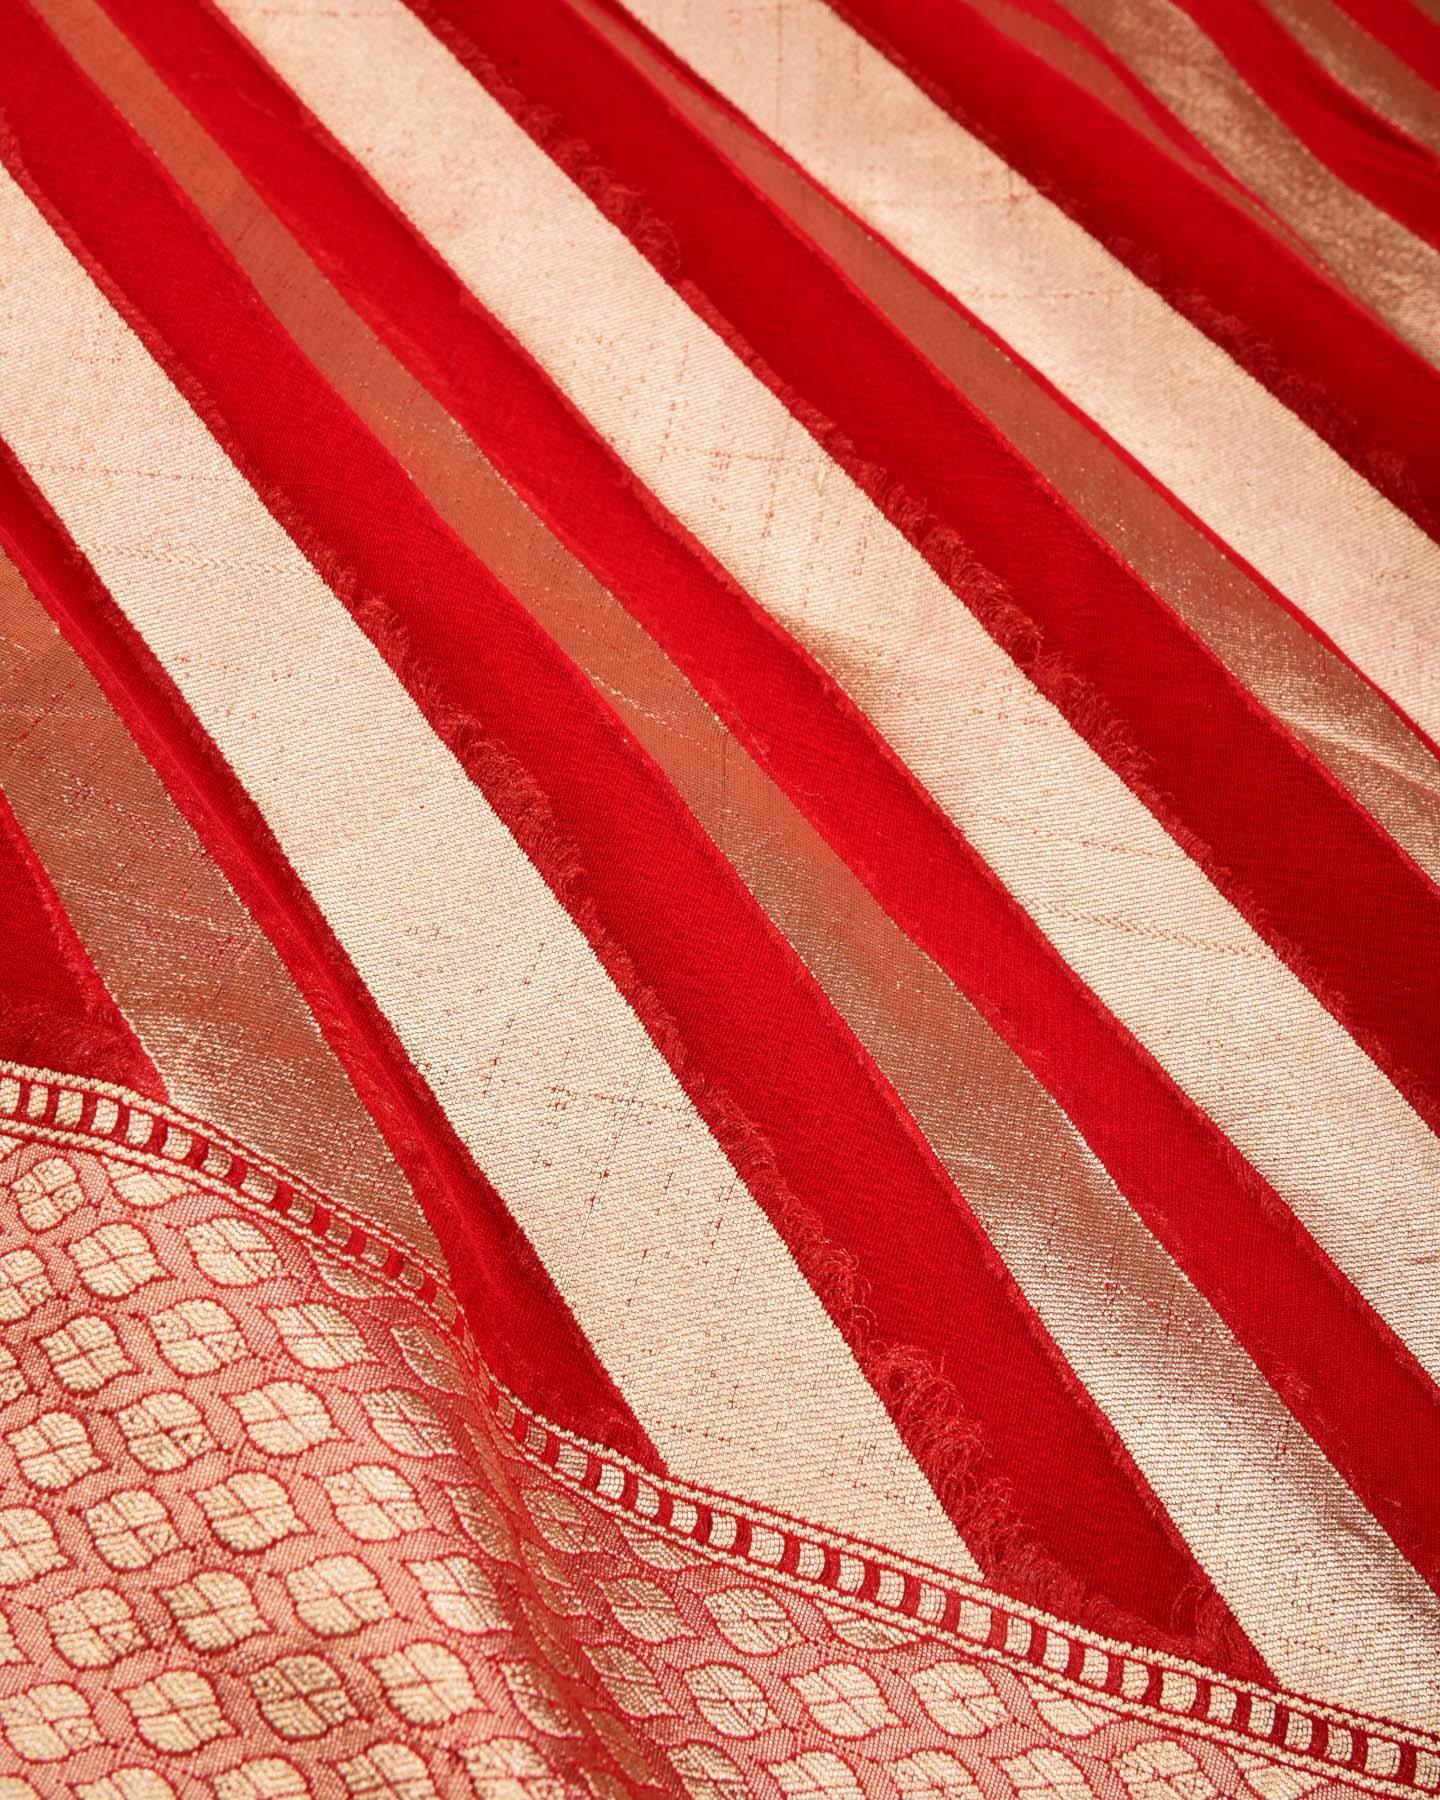 Red Banarasi Diagonal Stripes Cutwork Brocade Handwoven Banarasi Khaddi Georgette Saree - By HolyWeaves, Benares